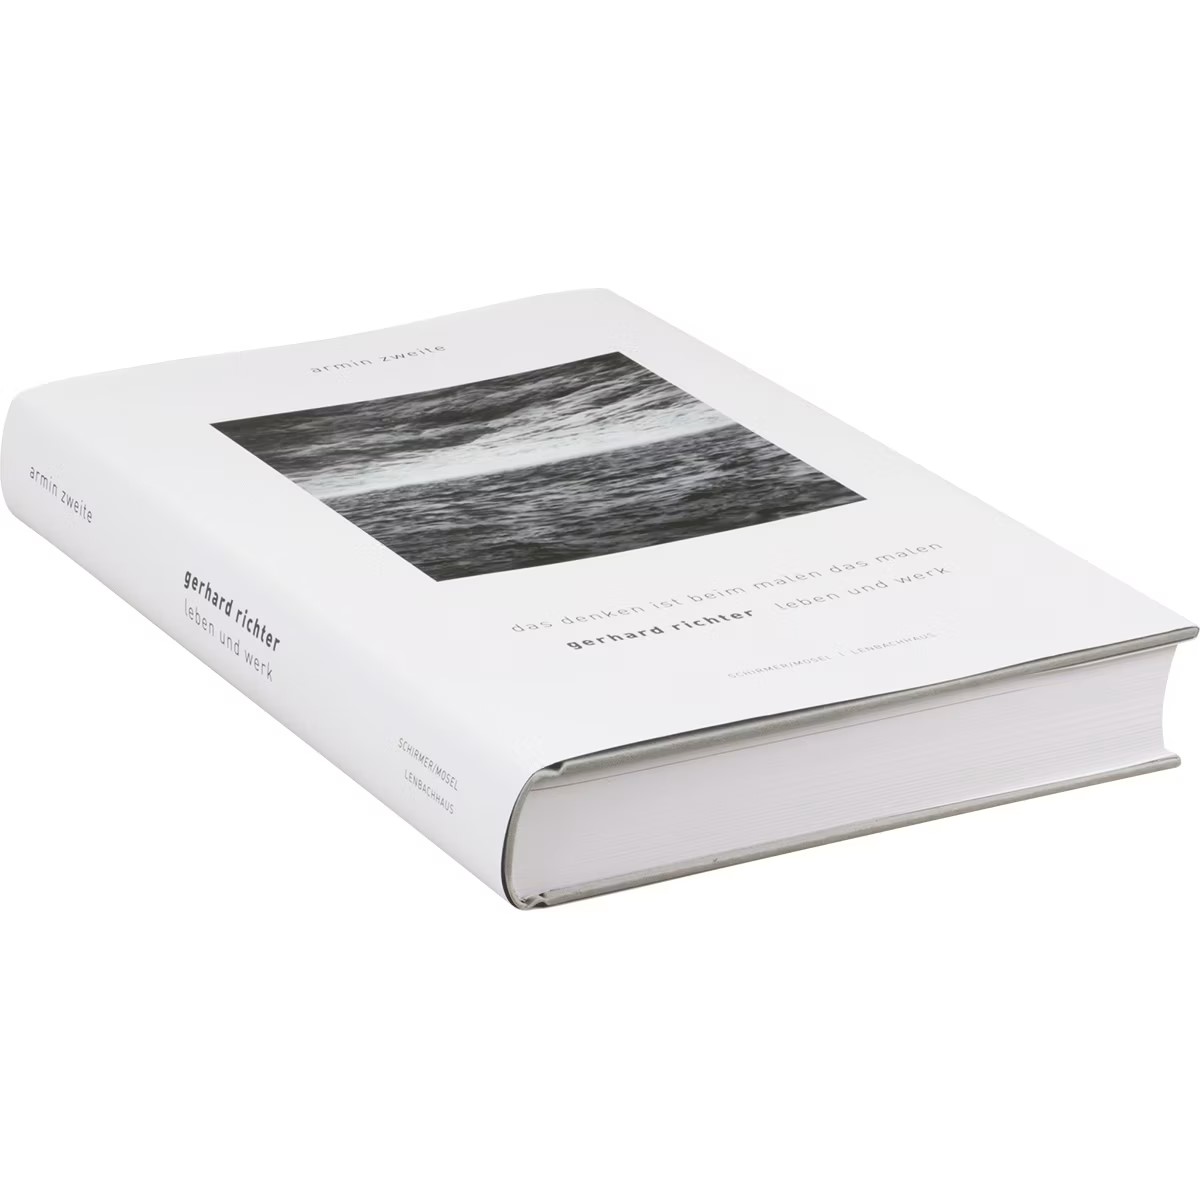 Gerhard Richter: Leben und Werk | Das Denken ist beim Malen das Malen